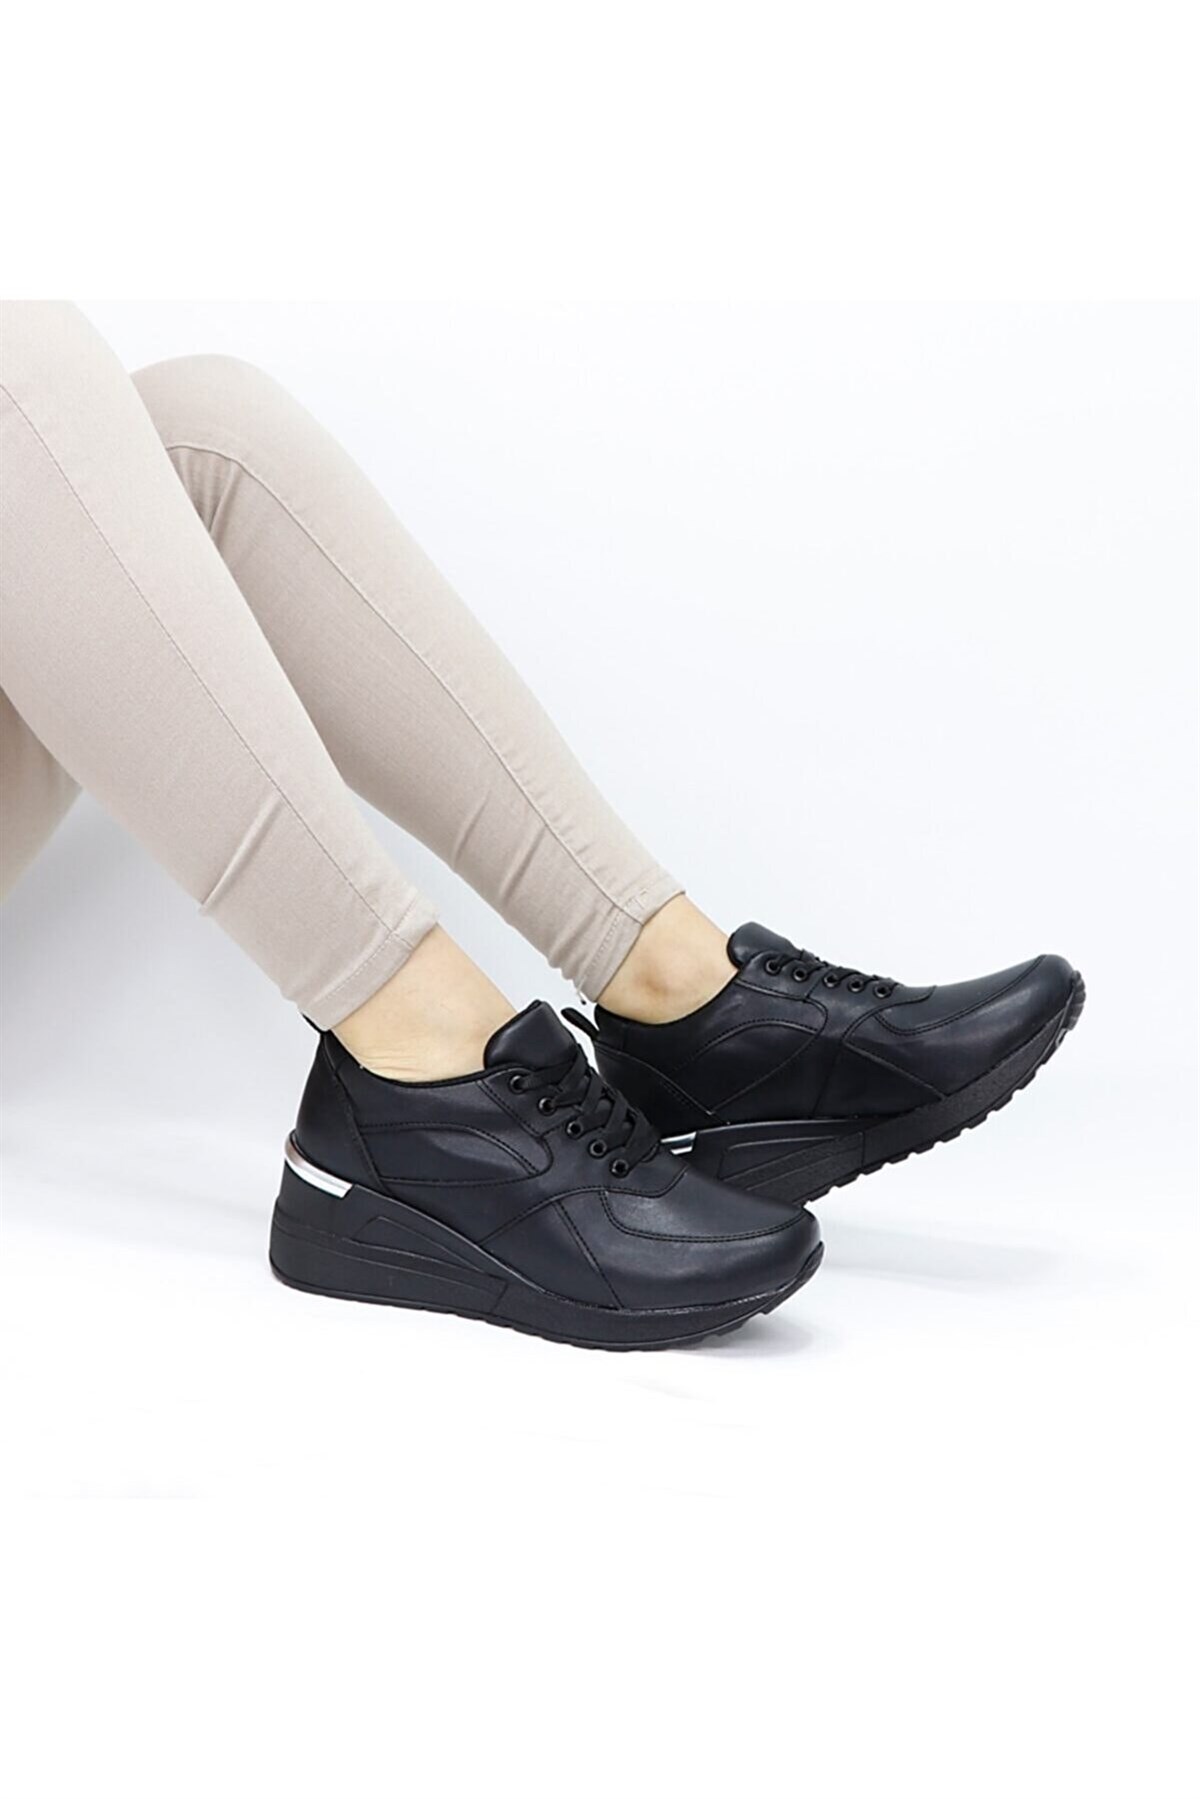 Kadın Siyah Dolgu Topuklu Spor Ayakkabı - Tuğbali